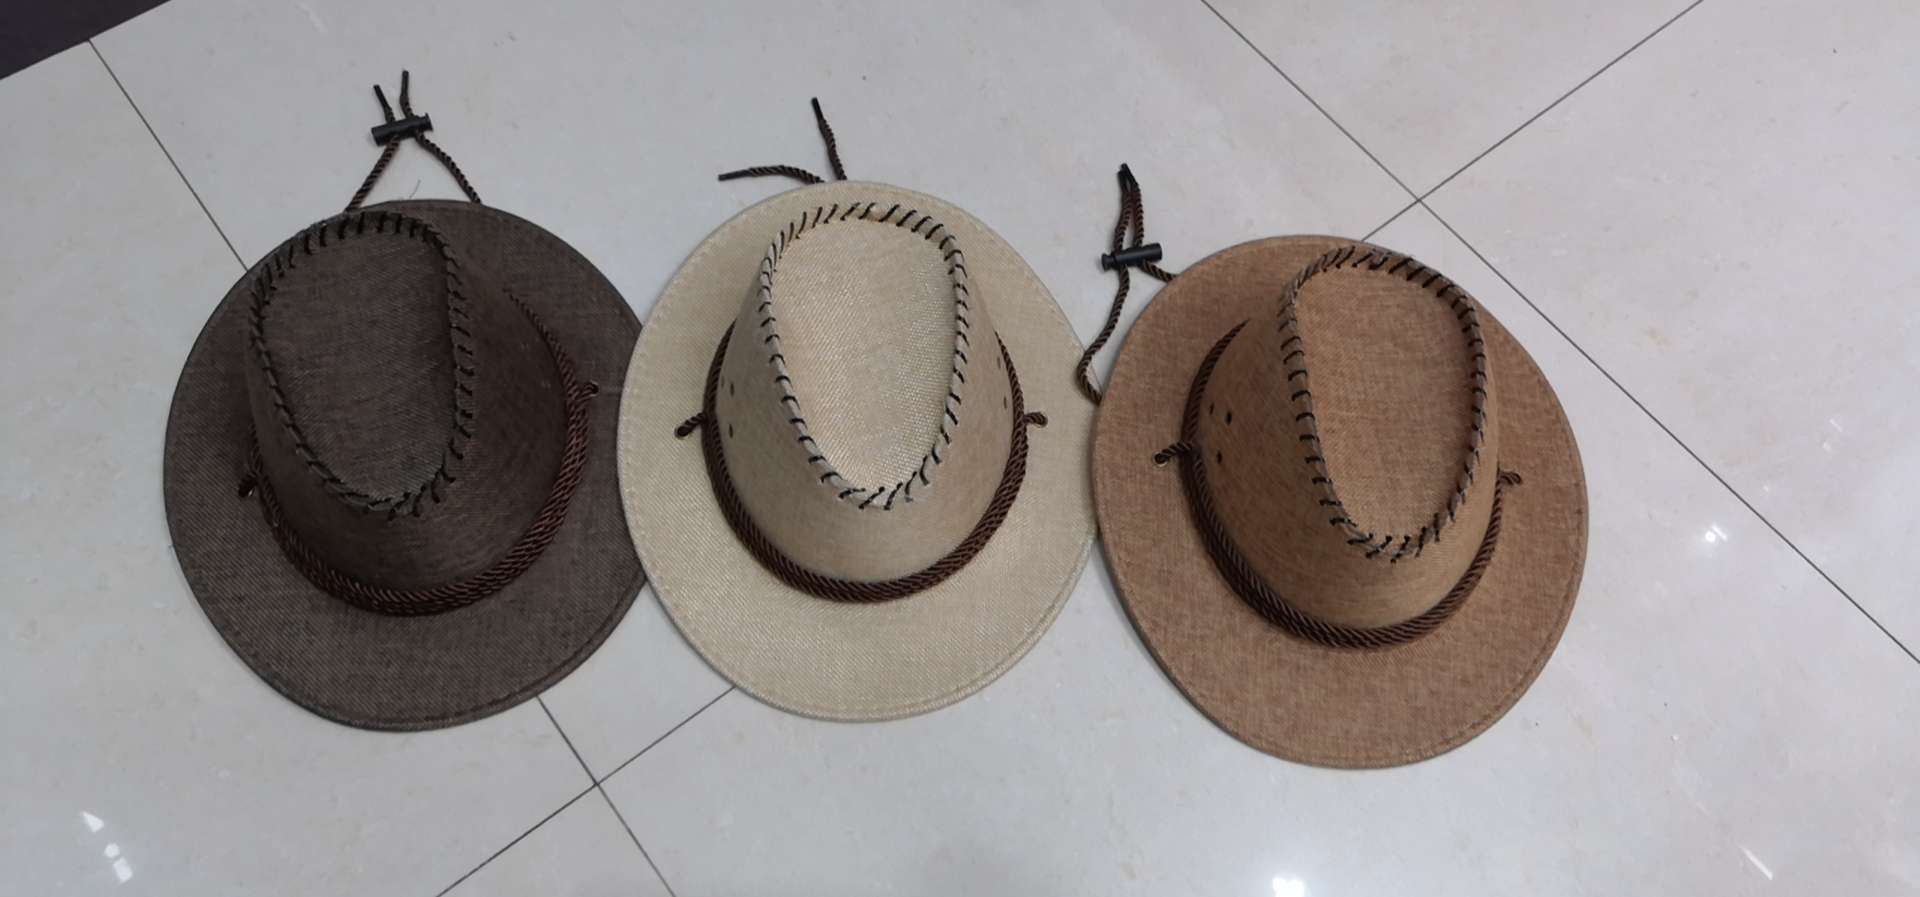 专业生产各种西部牛仔帽，礼帽，承接内销外贸订单，欢迎前来采购